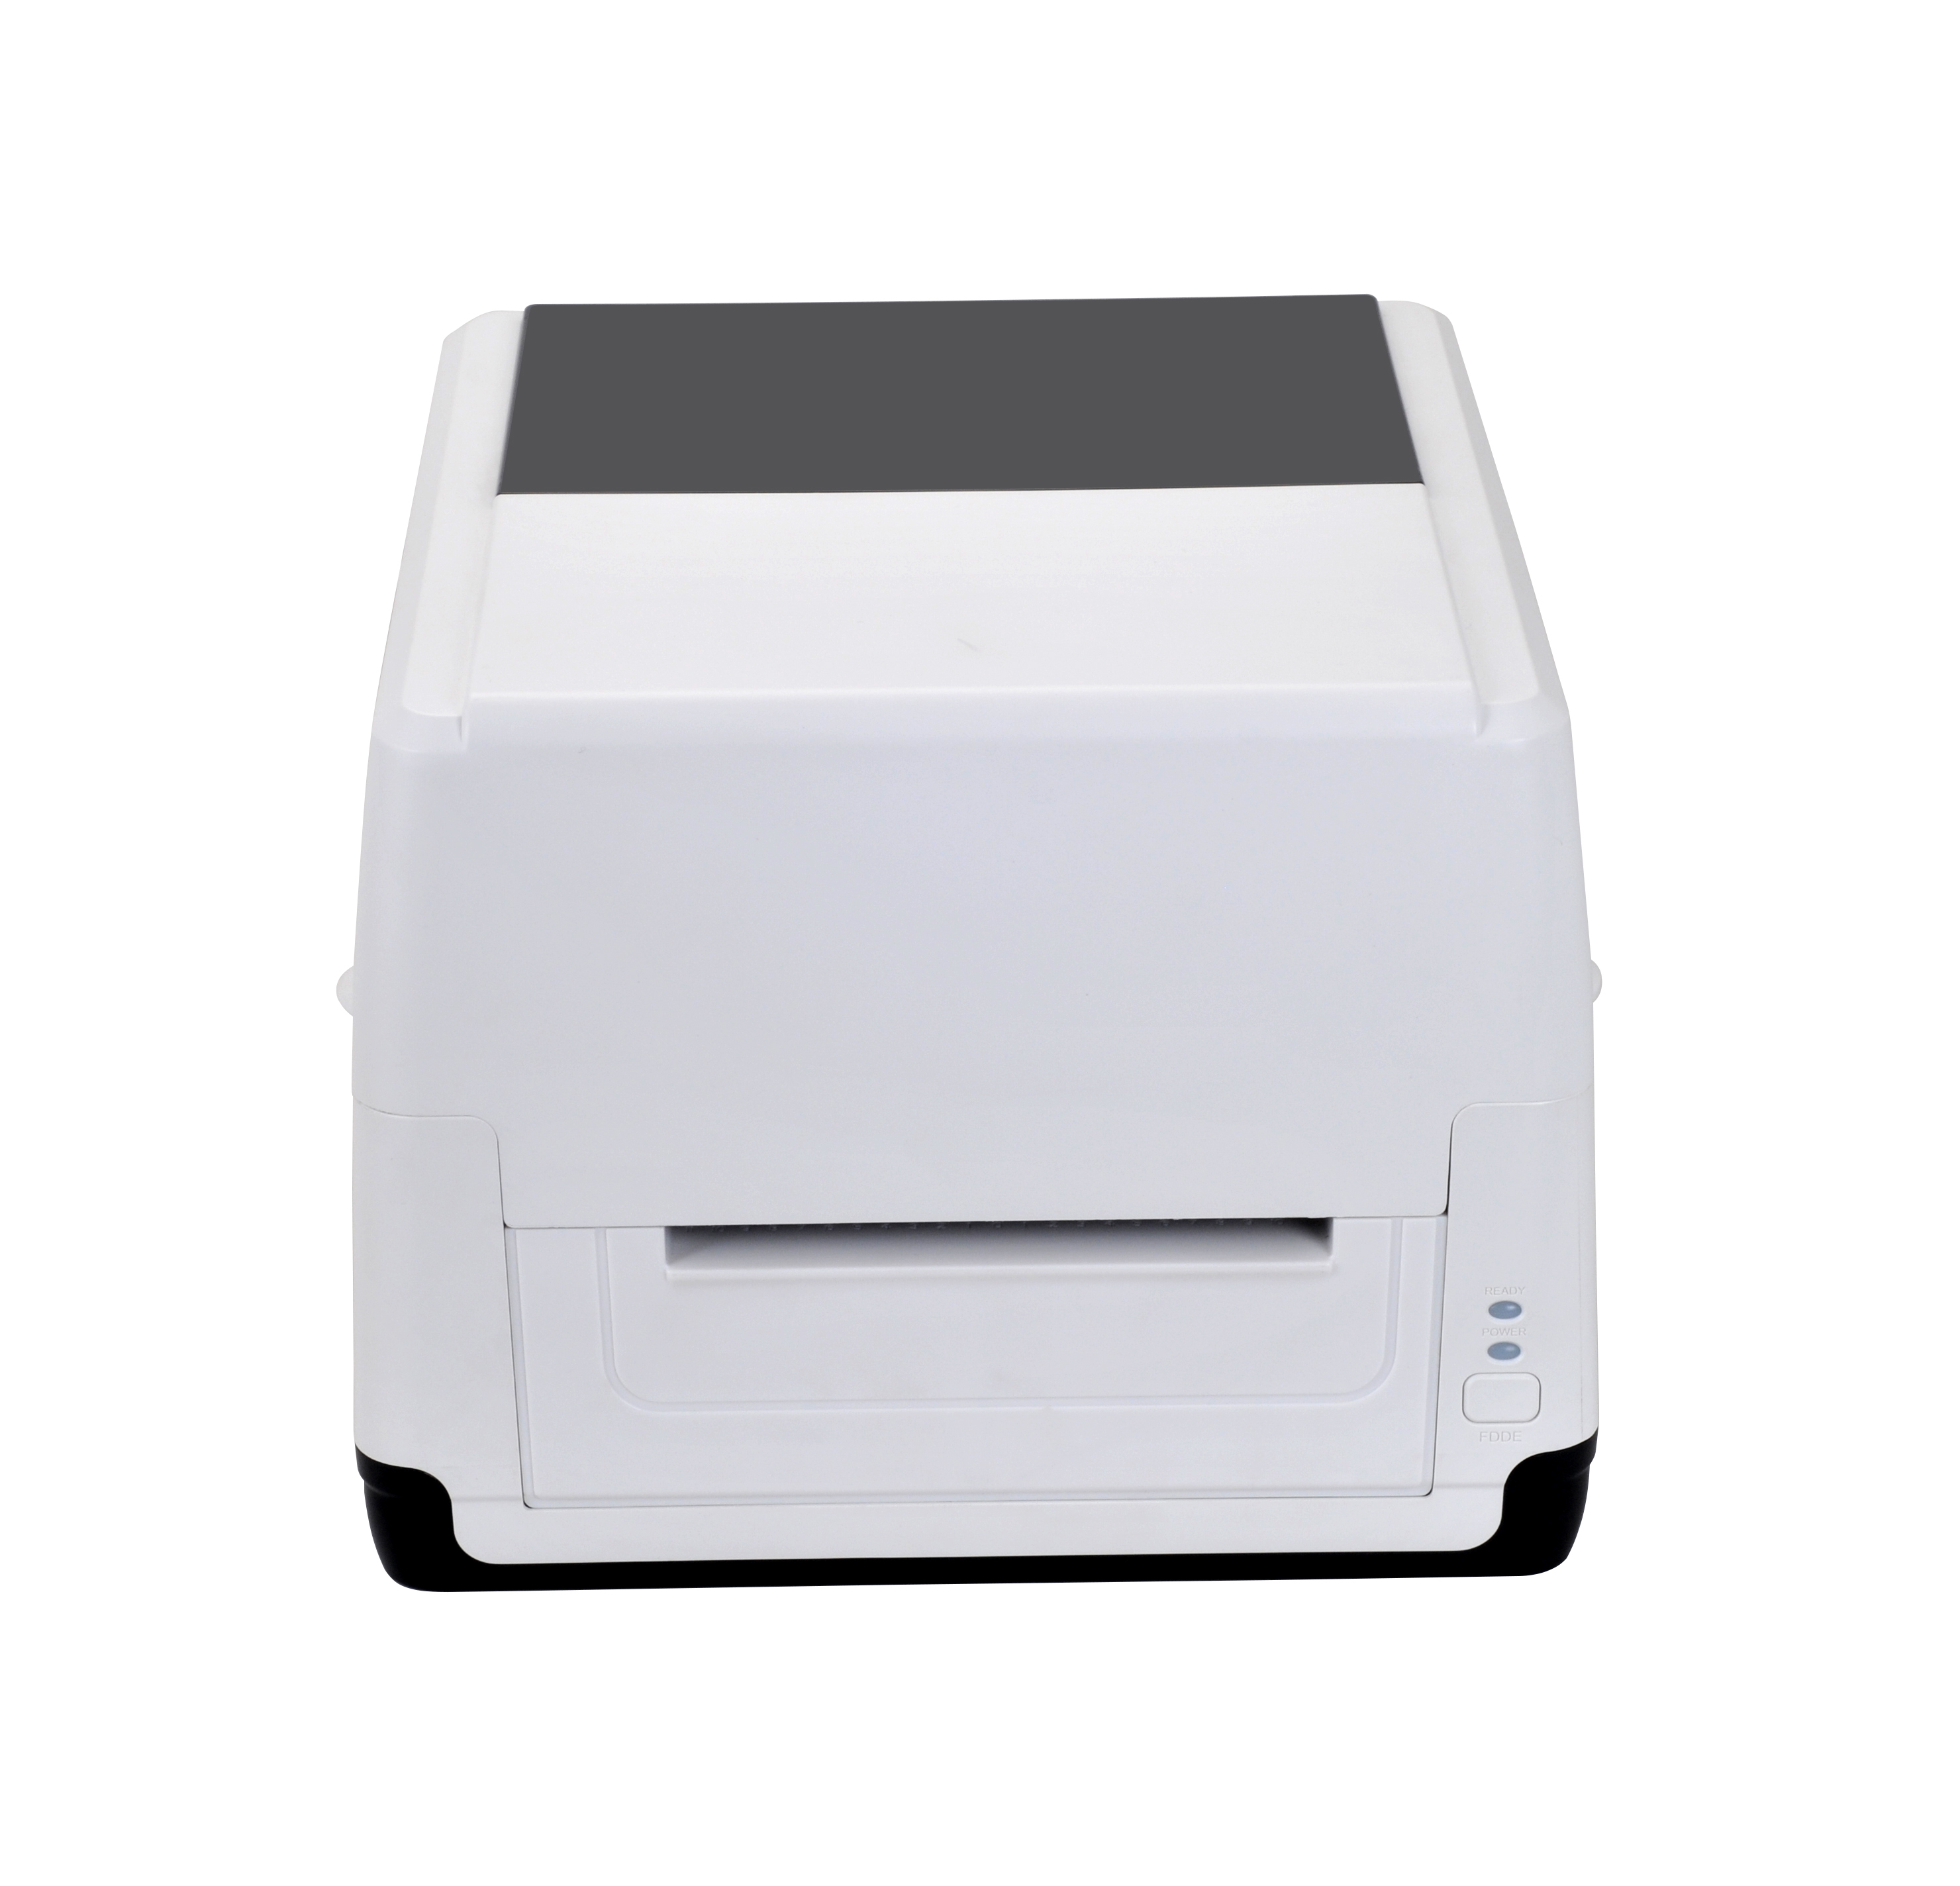 Beleg- und Etikettendrucker mit modischem Design Thermotransfer/Thermodirekt